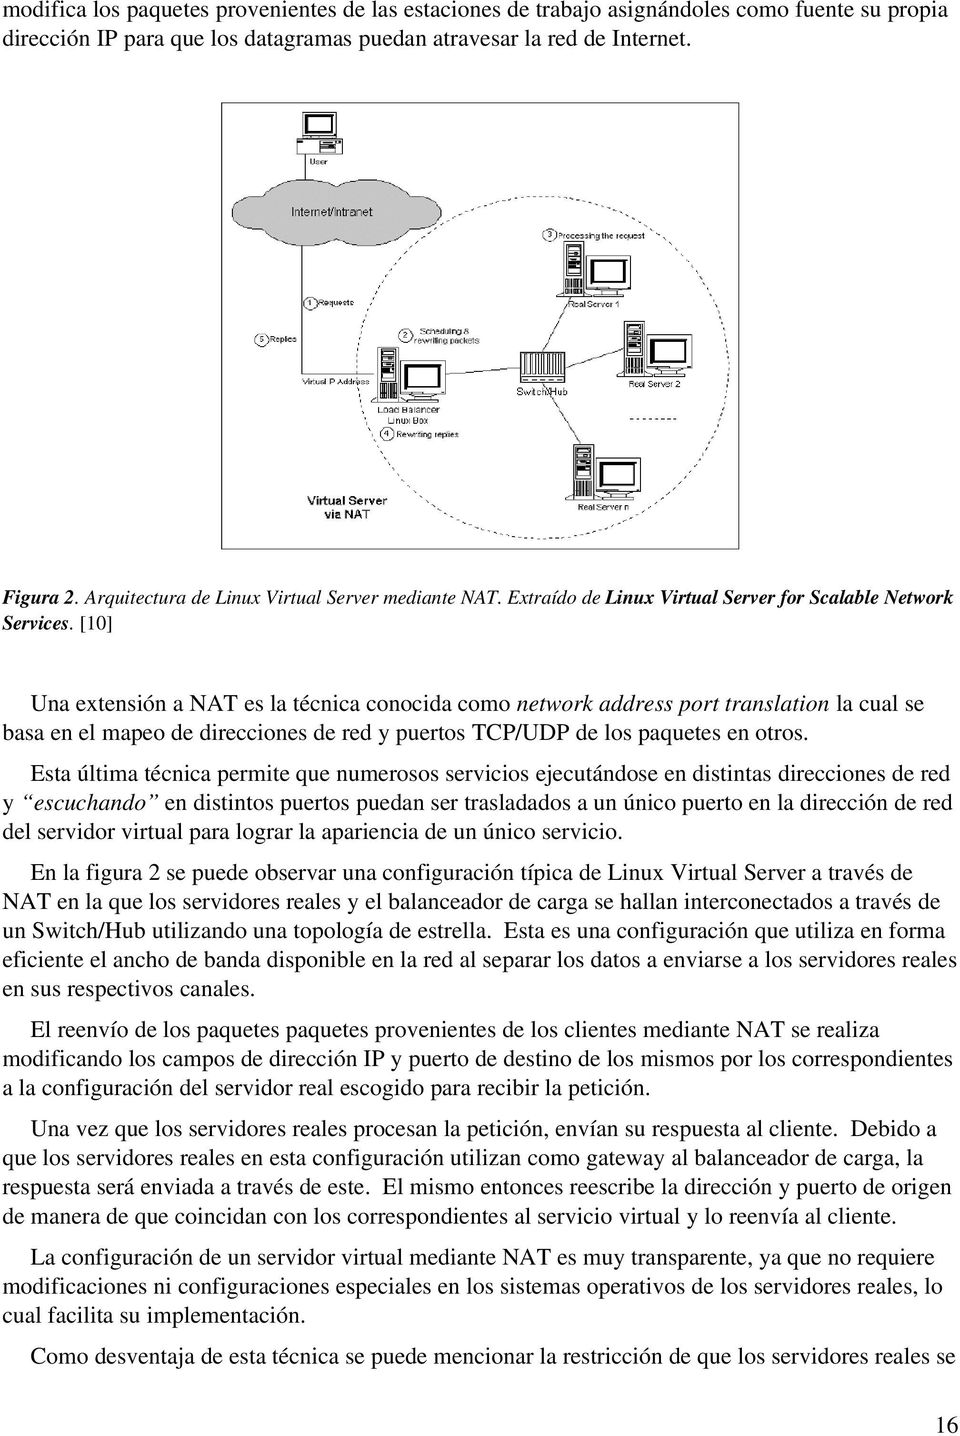 [10] Una extensión a NAT es la técnica conocida como network address port translation la cual se basa en el mapeo de direcciones de red y puertos TCP/UDP de los paquetes en otros.